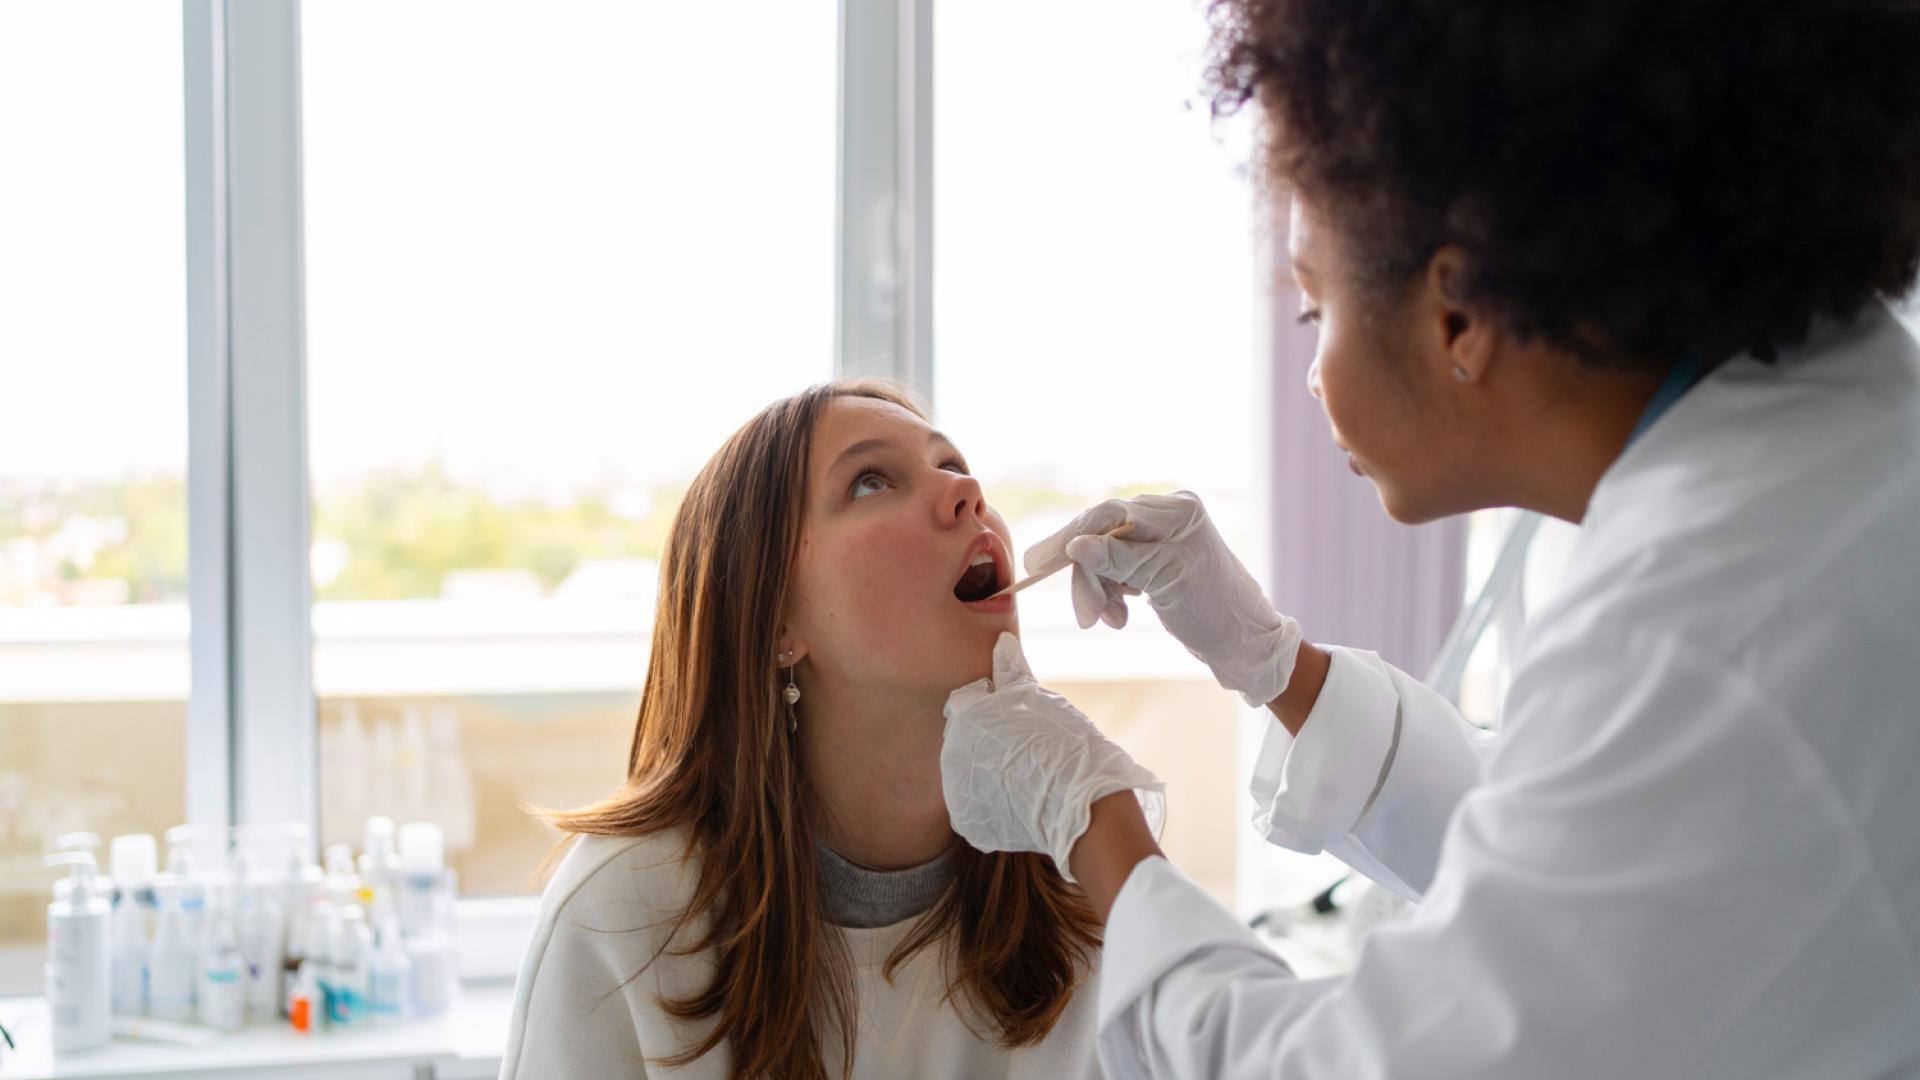 Mulher profissional de saúde colhendo amostra salivar de paciente mulher